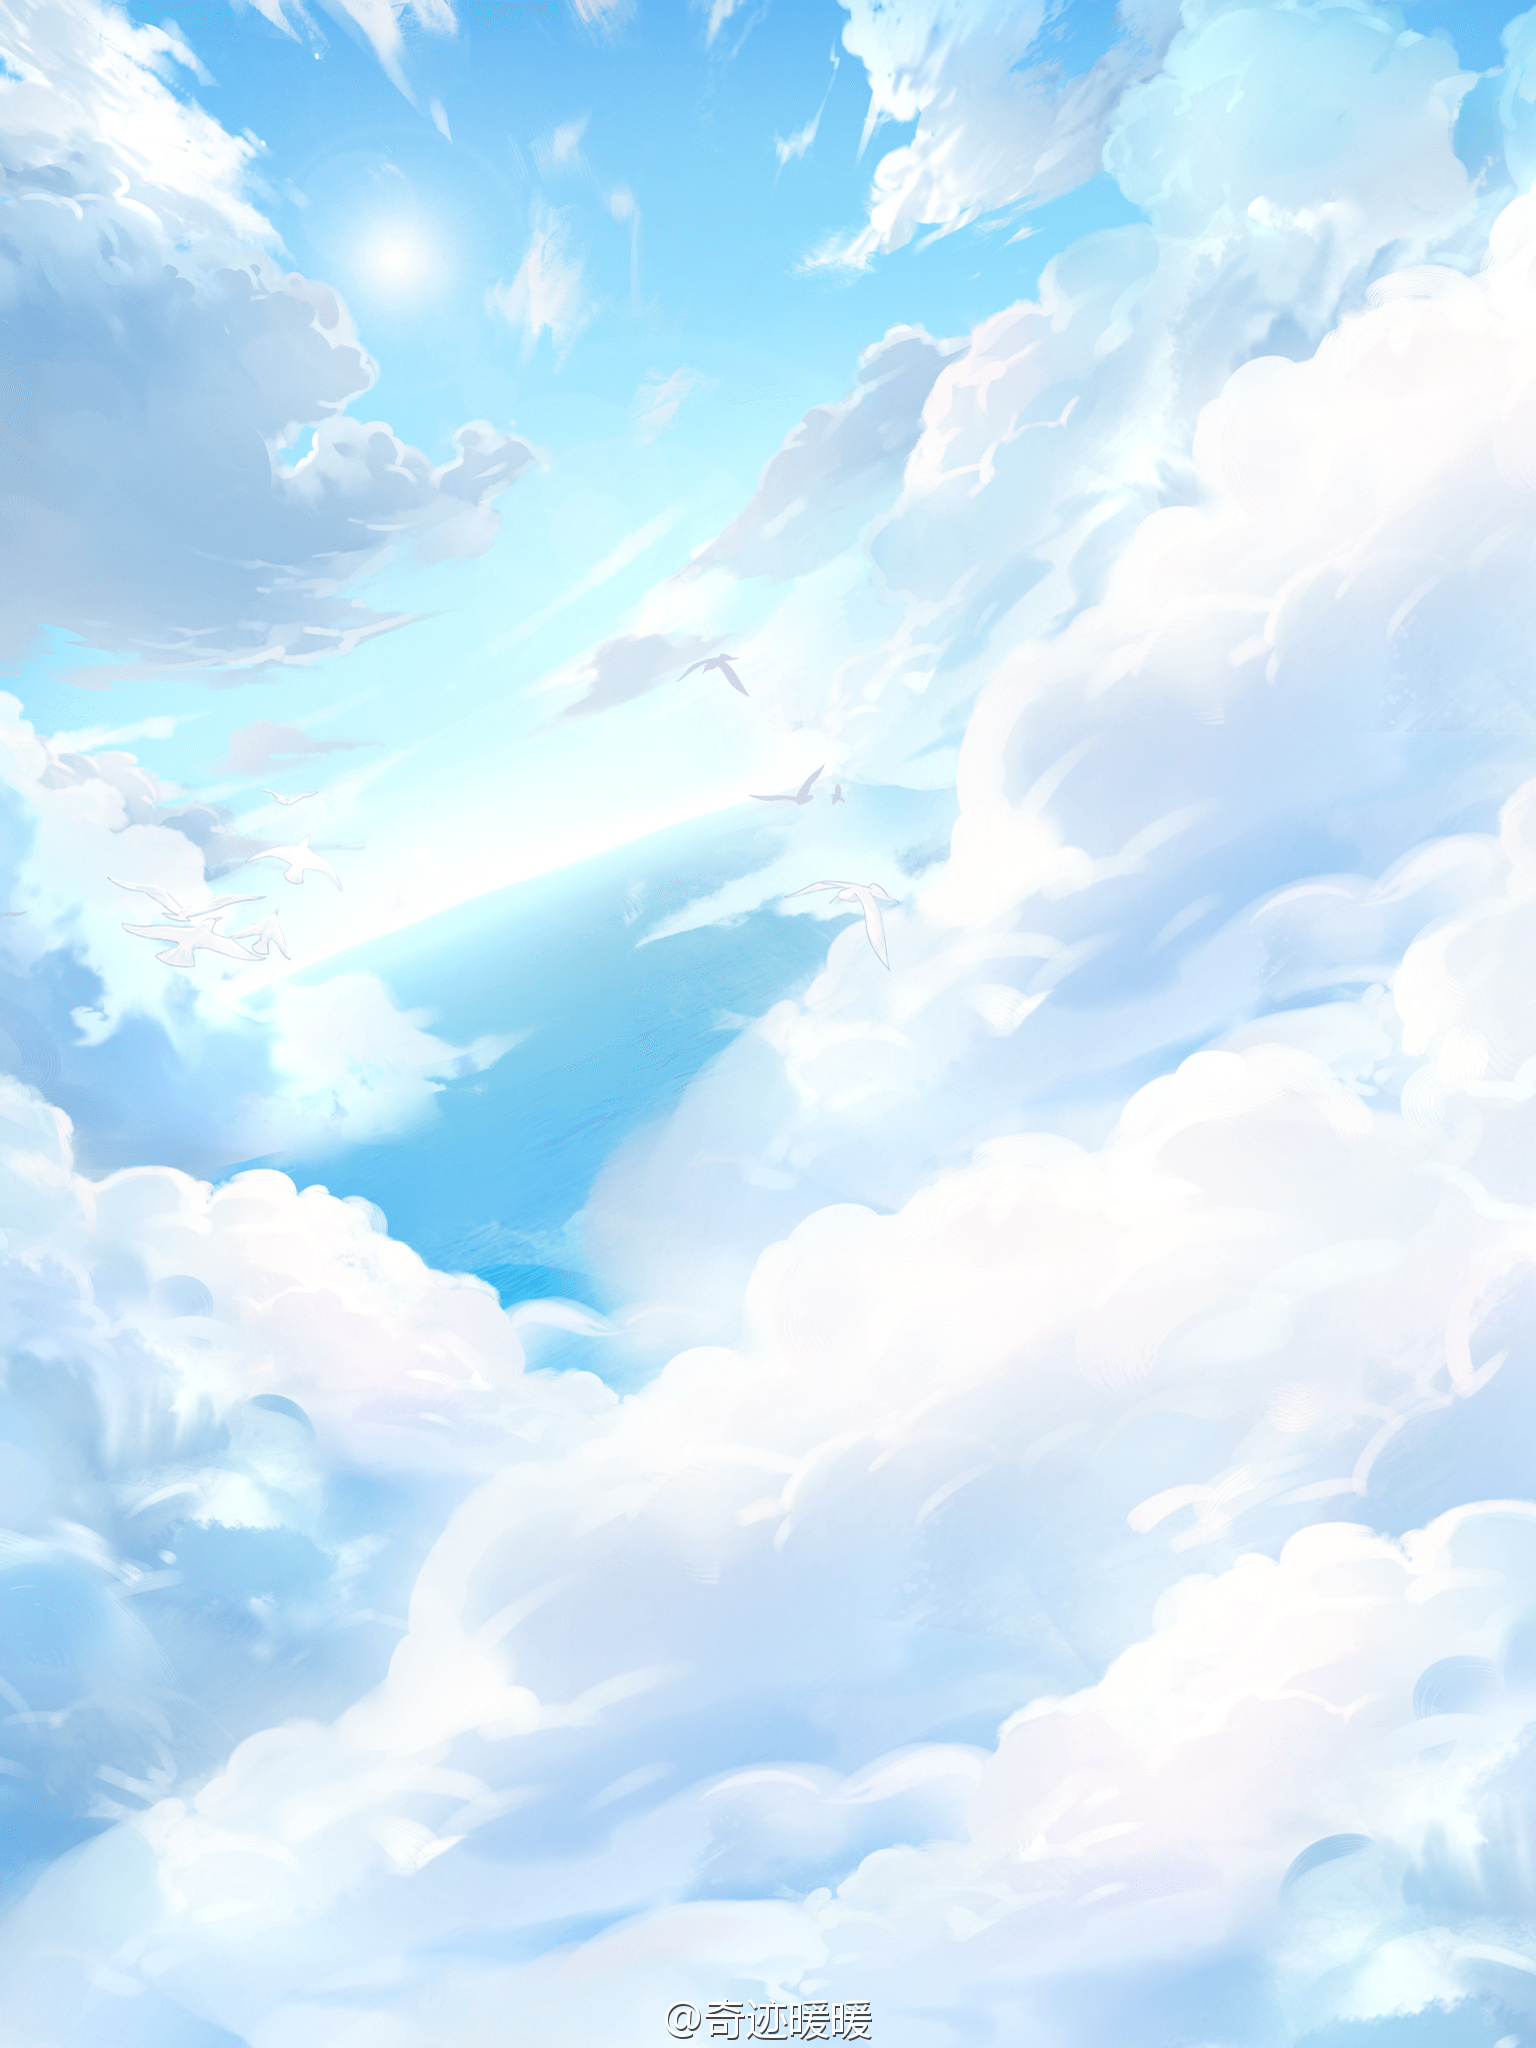 奇迹暖暖 夏沫·海歌活动·背景 云上梦境